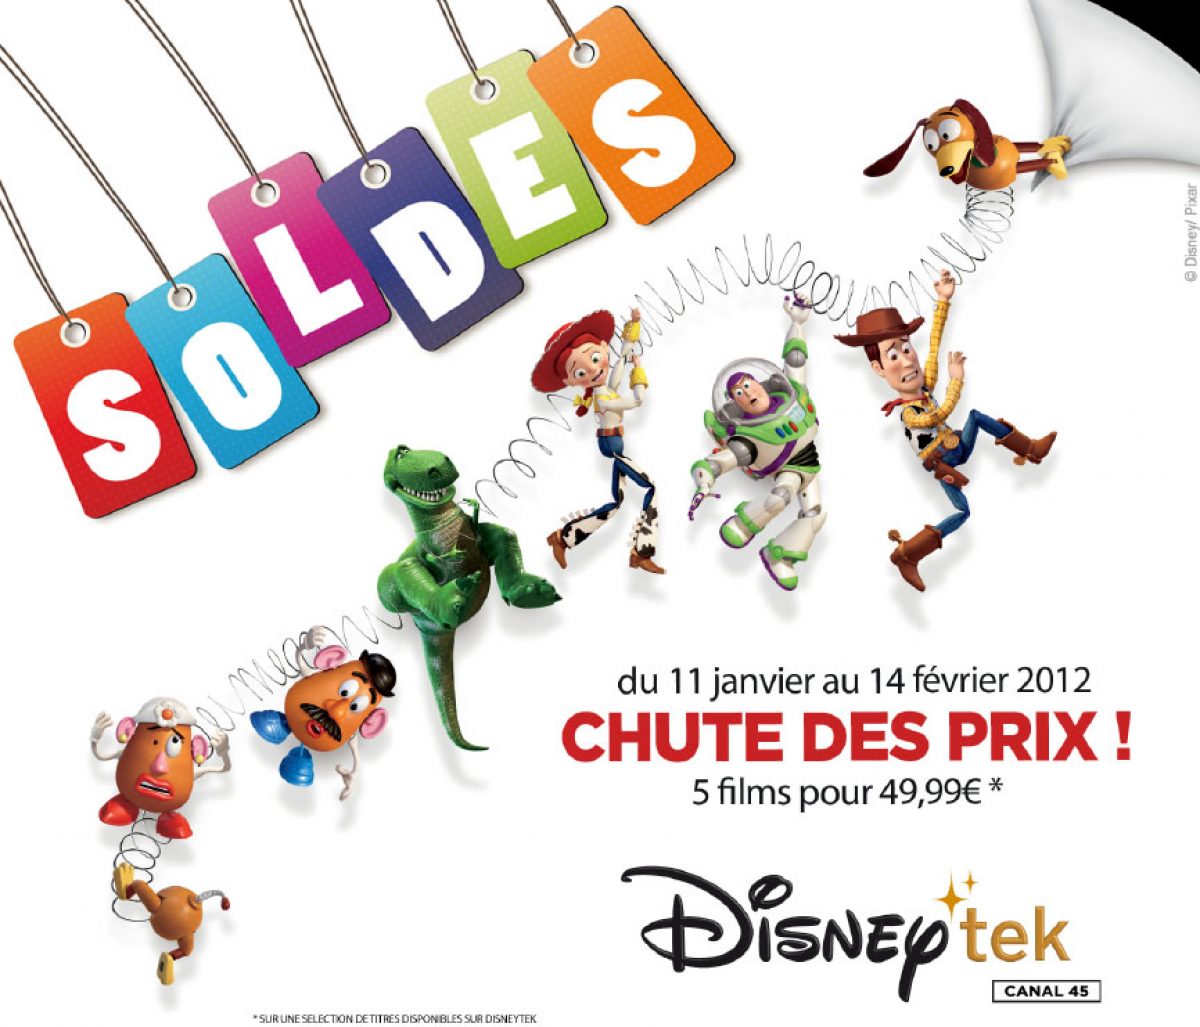 Freebox : Disneytek va proposer des soldes avec 5 films à l’achat pour 49,99€